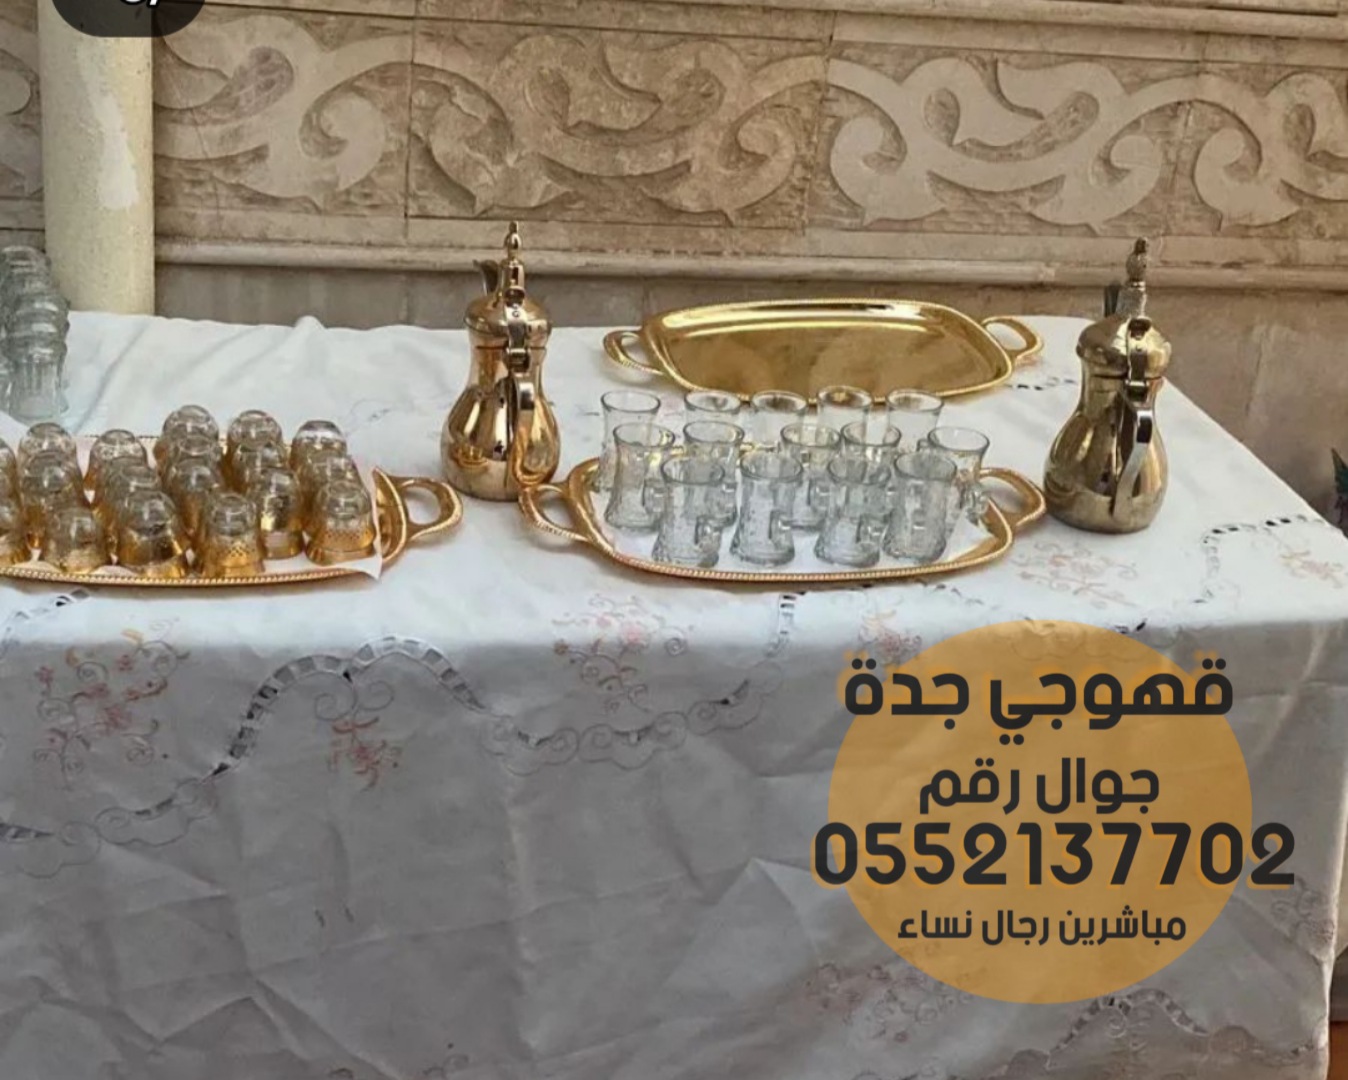 مباشرين قهوة وشاي رجال ونساء في جدة 0552137702